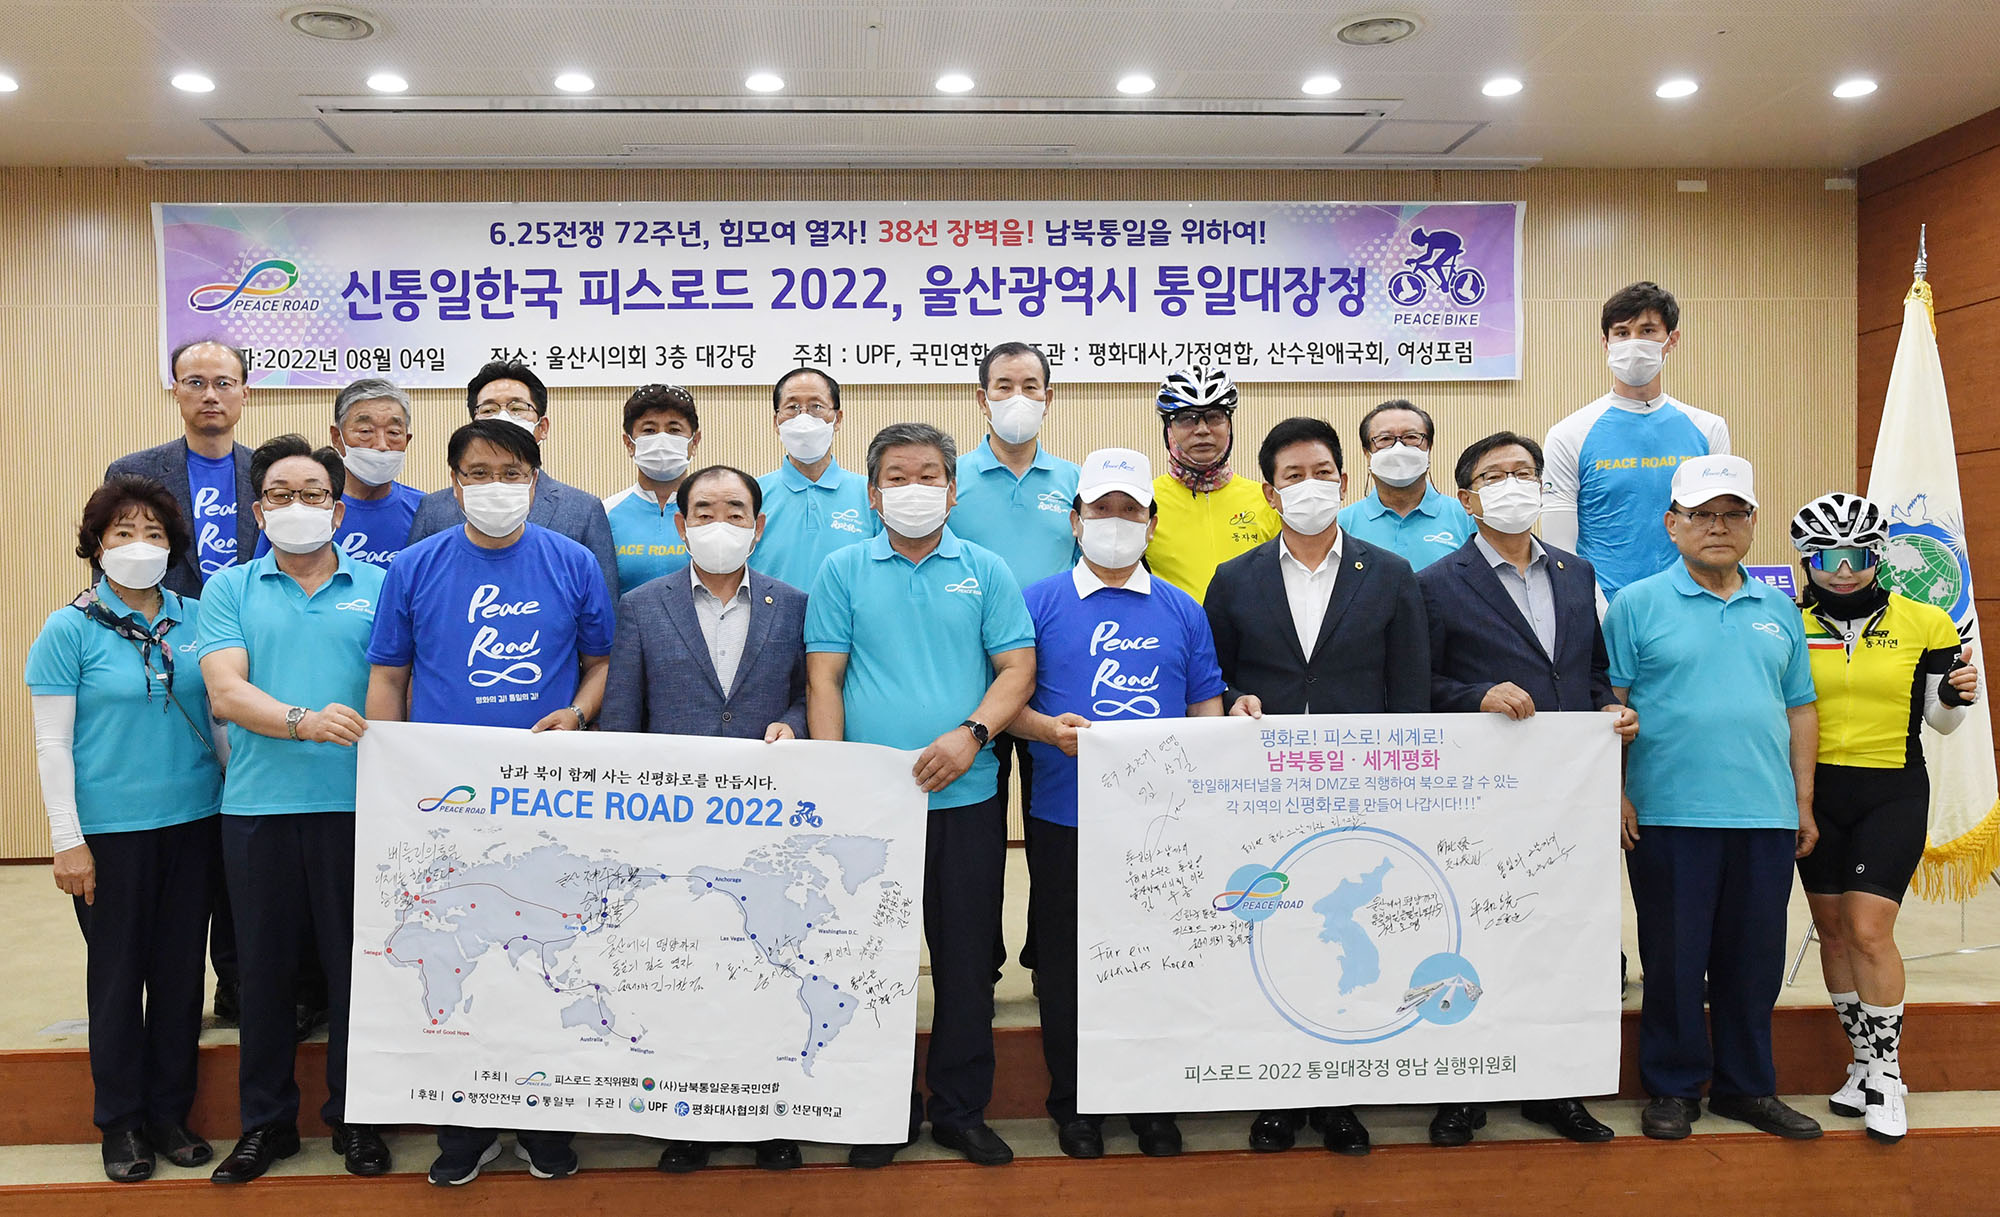 One Korea 피스로드 2022 통일대장정1